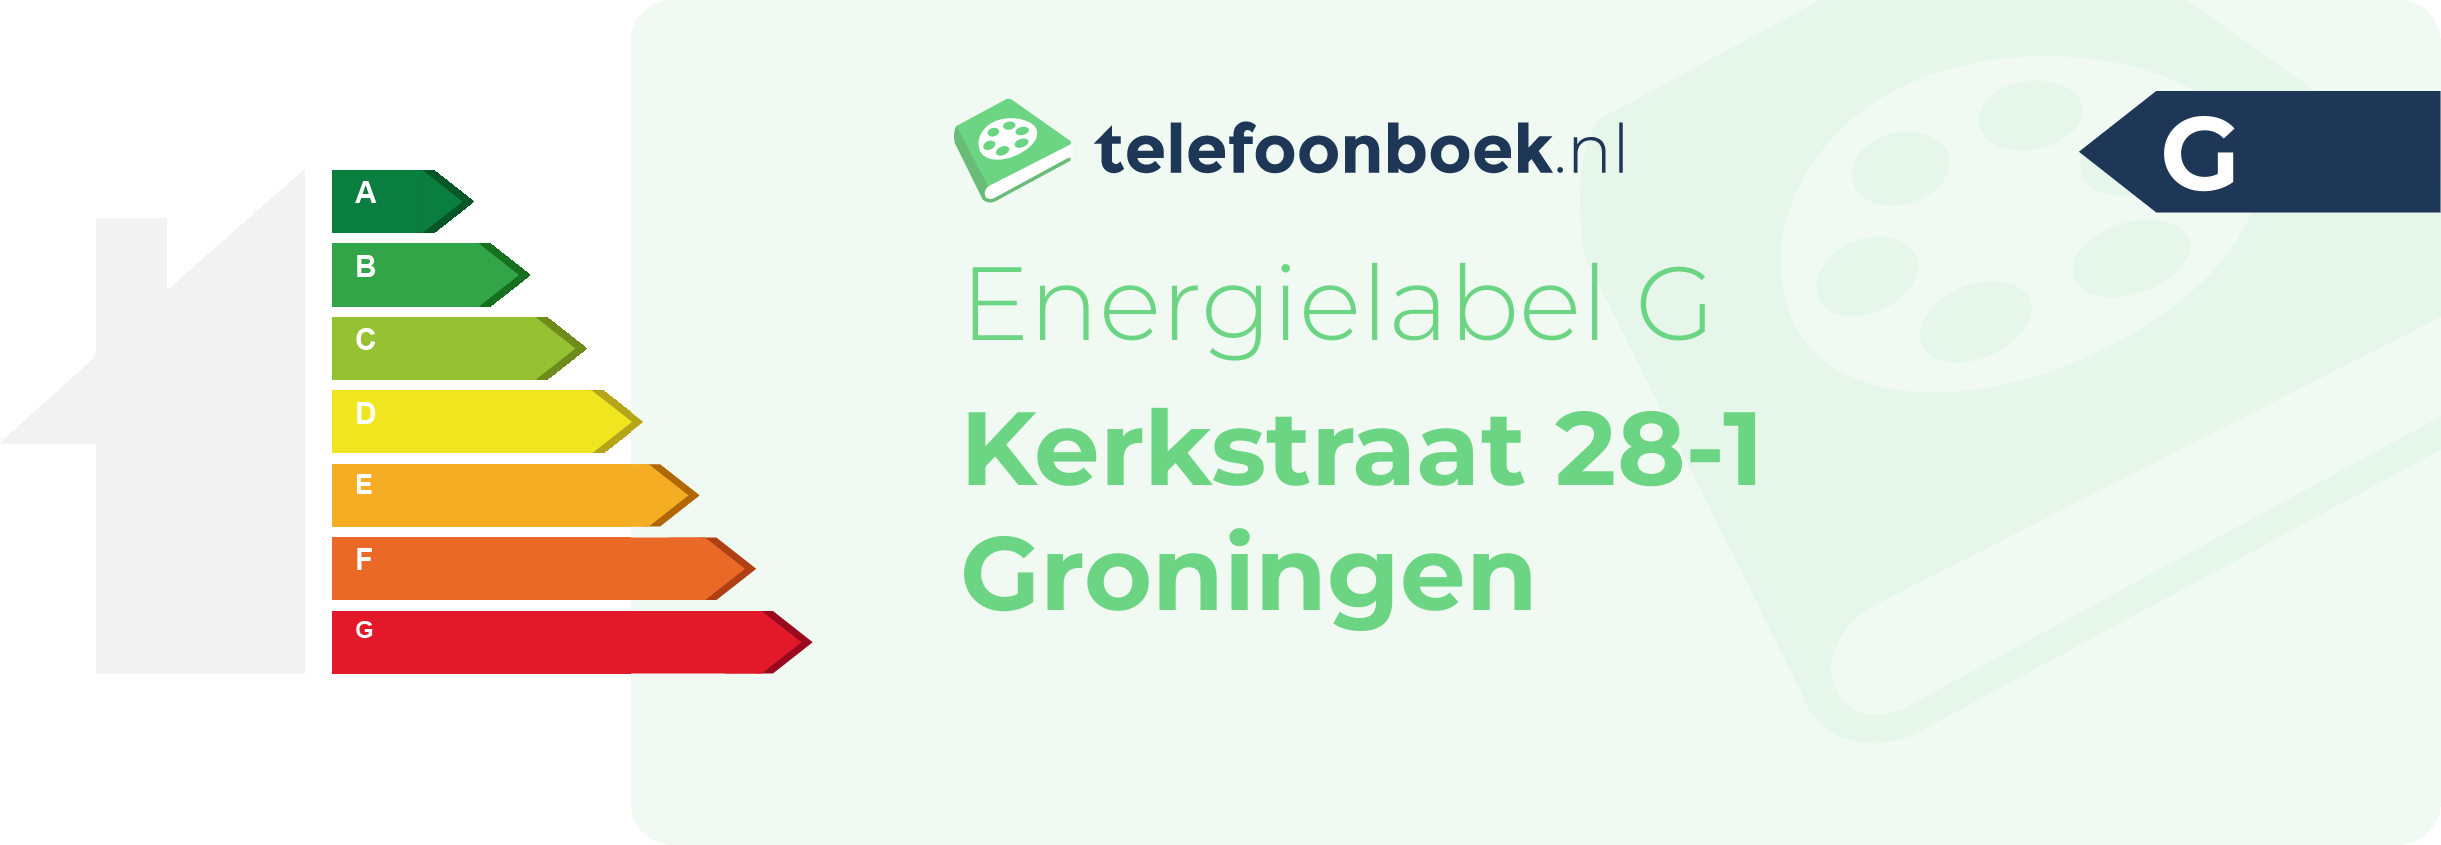 Energielabel Kerkstraat 28-1 Groningen